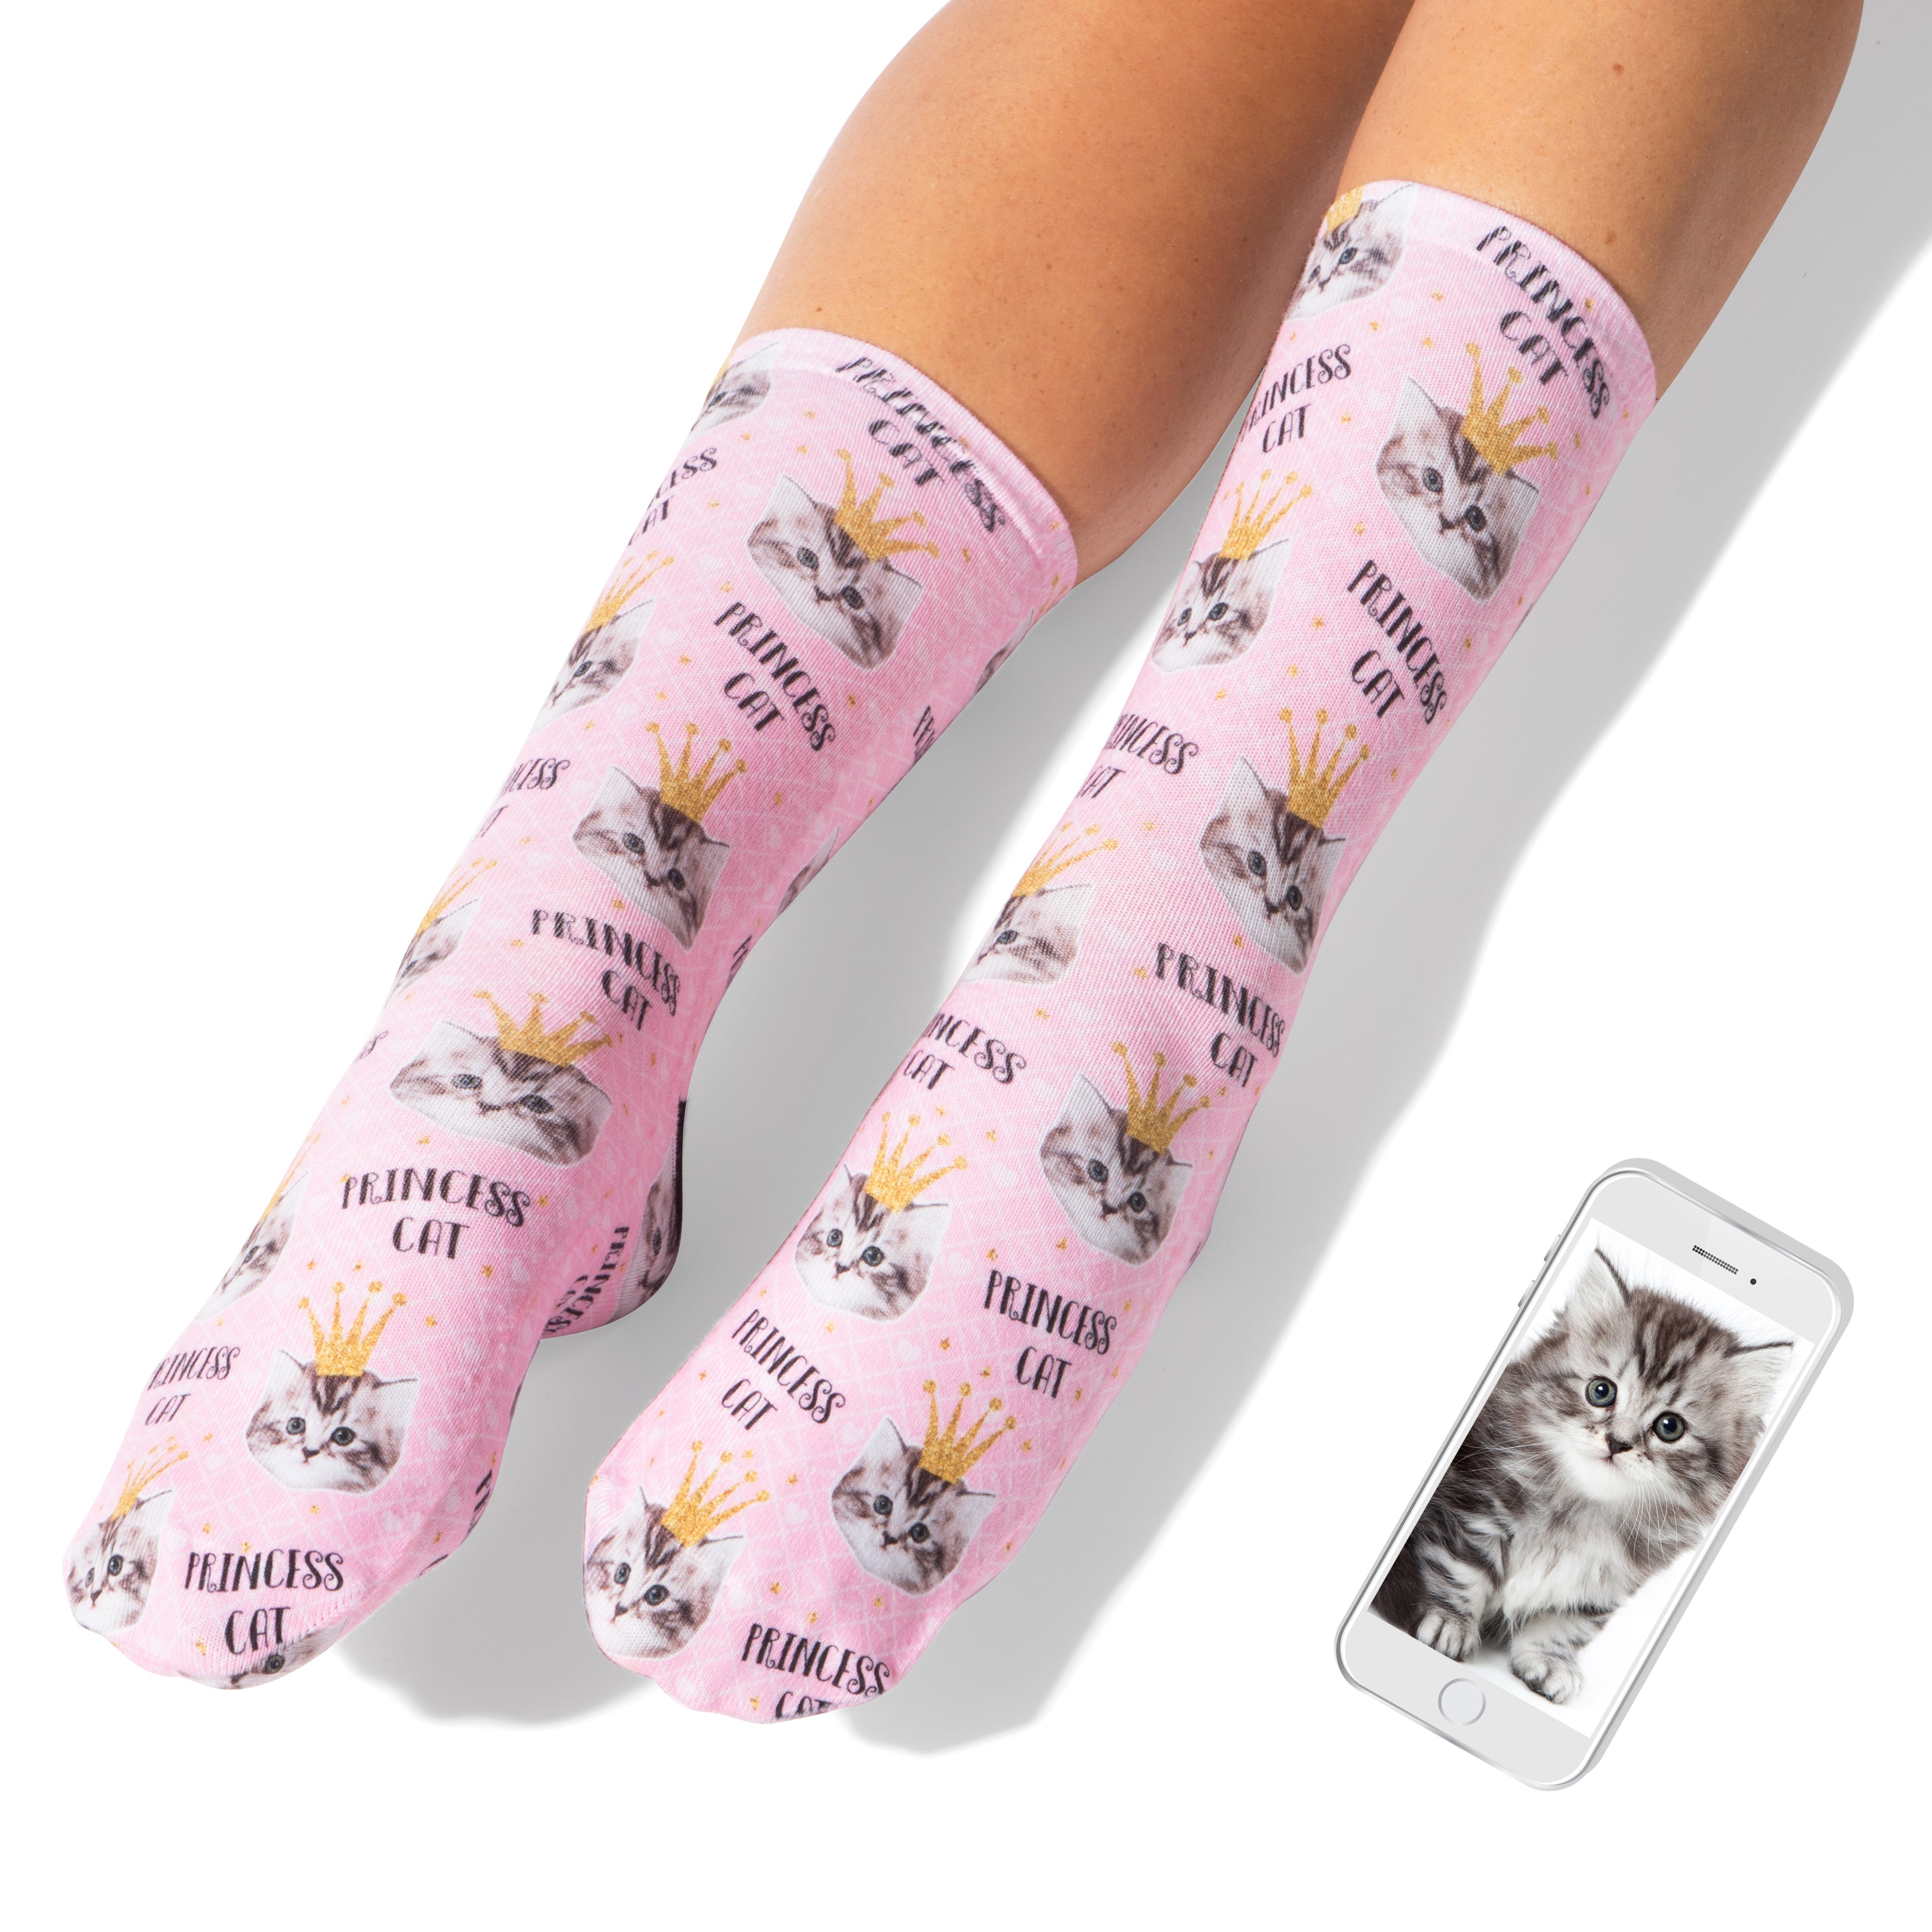 Princess Cat Socks